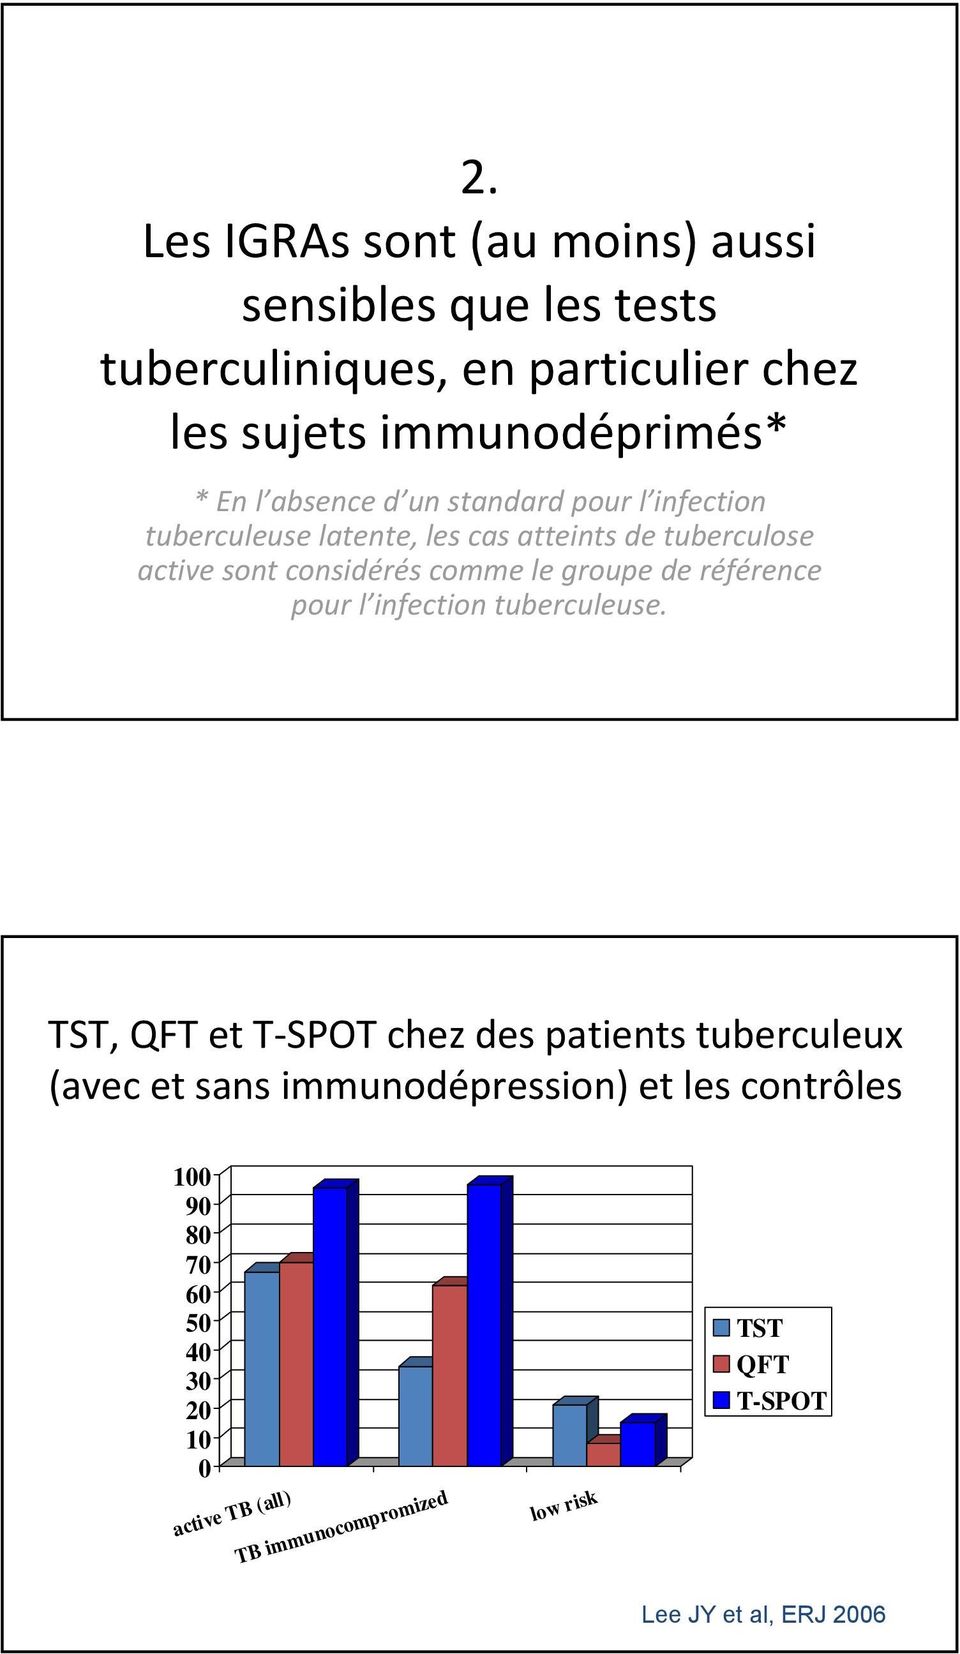 groupe de référence pour l infection tuberculeuse.